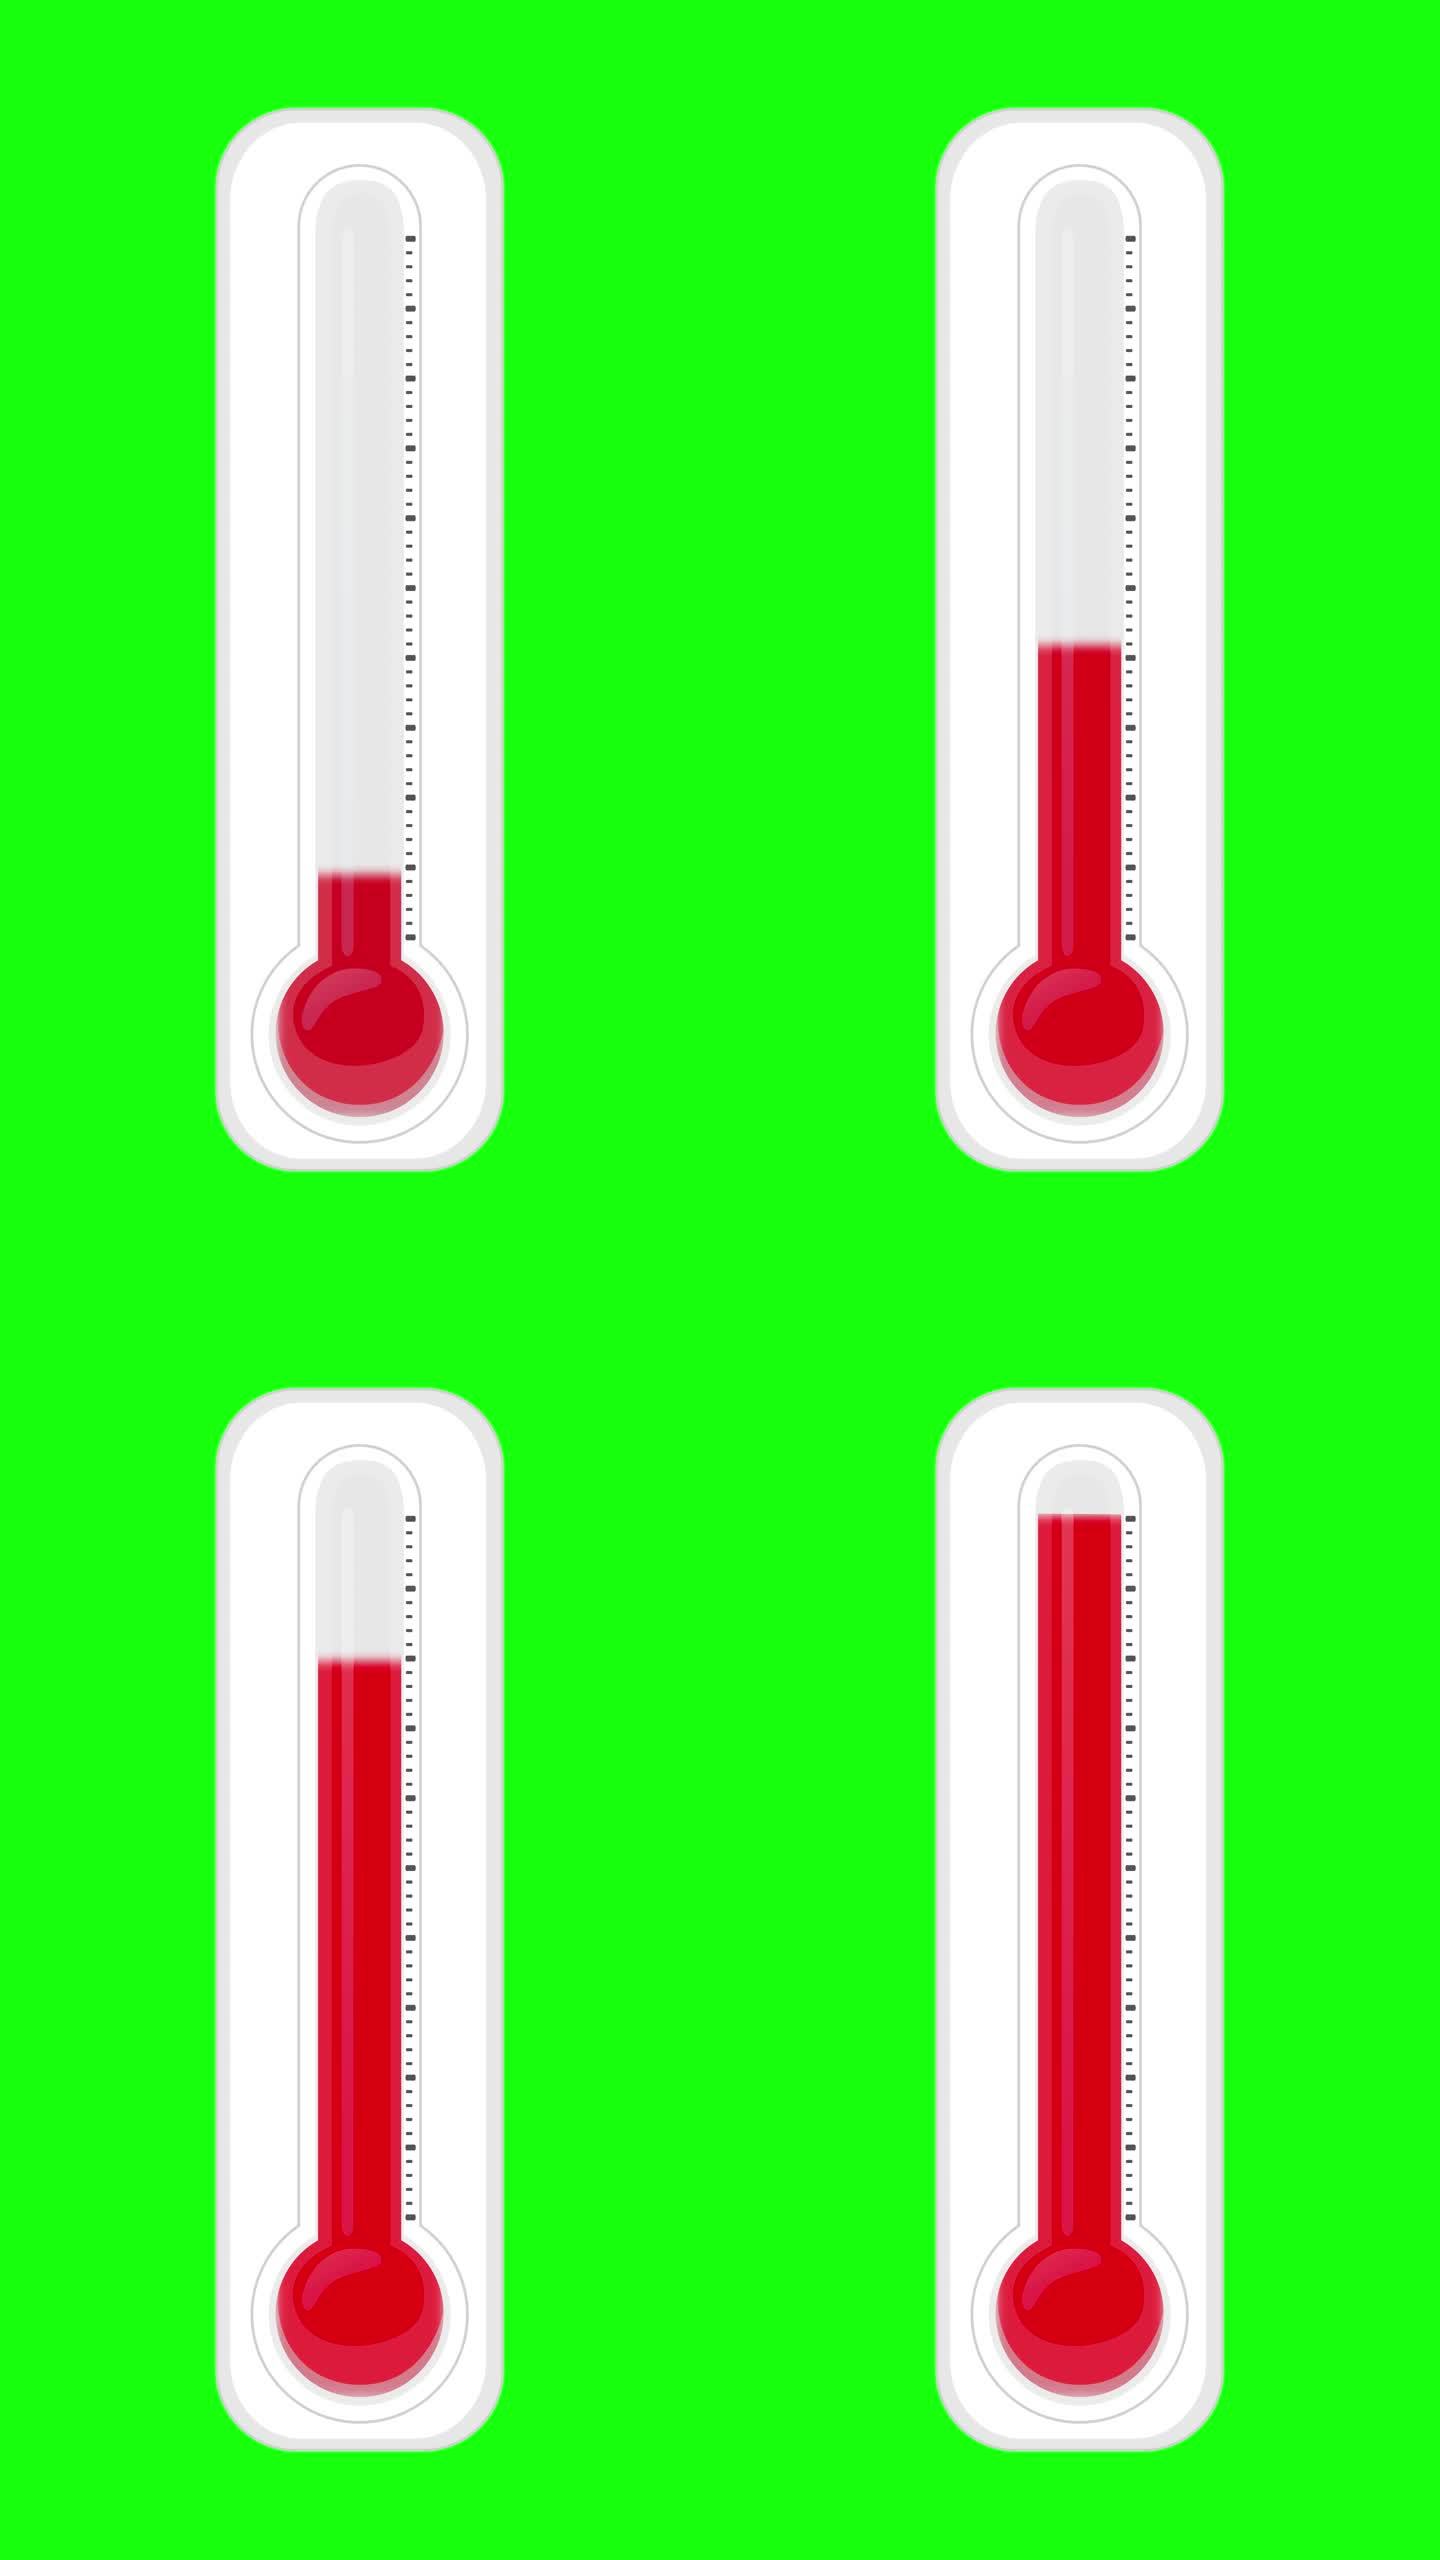 最小和平面设计温度计动画可循环背景库存视频-空气温度测量设备运动图-温度计随时间增加的动画-温度计随